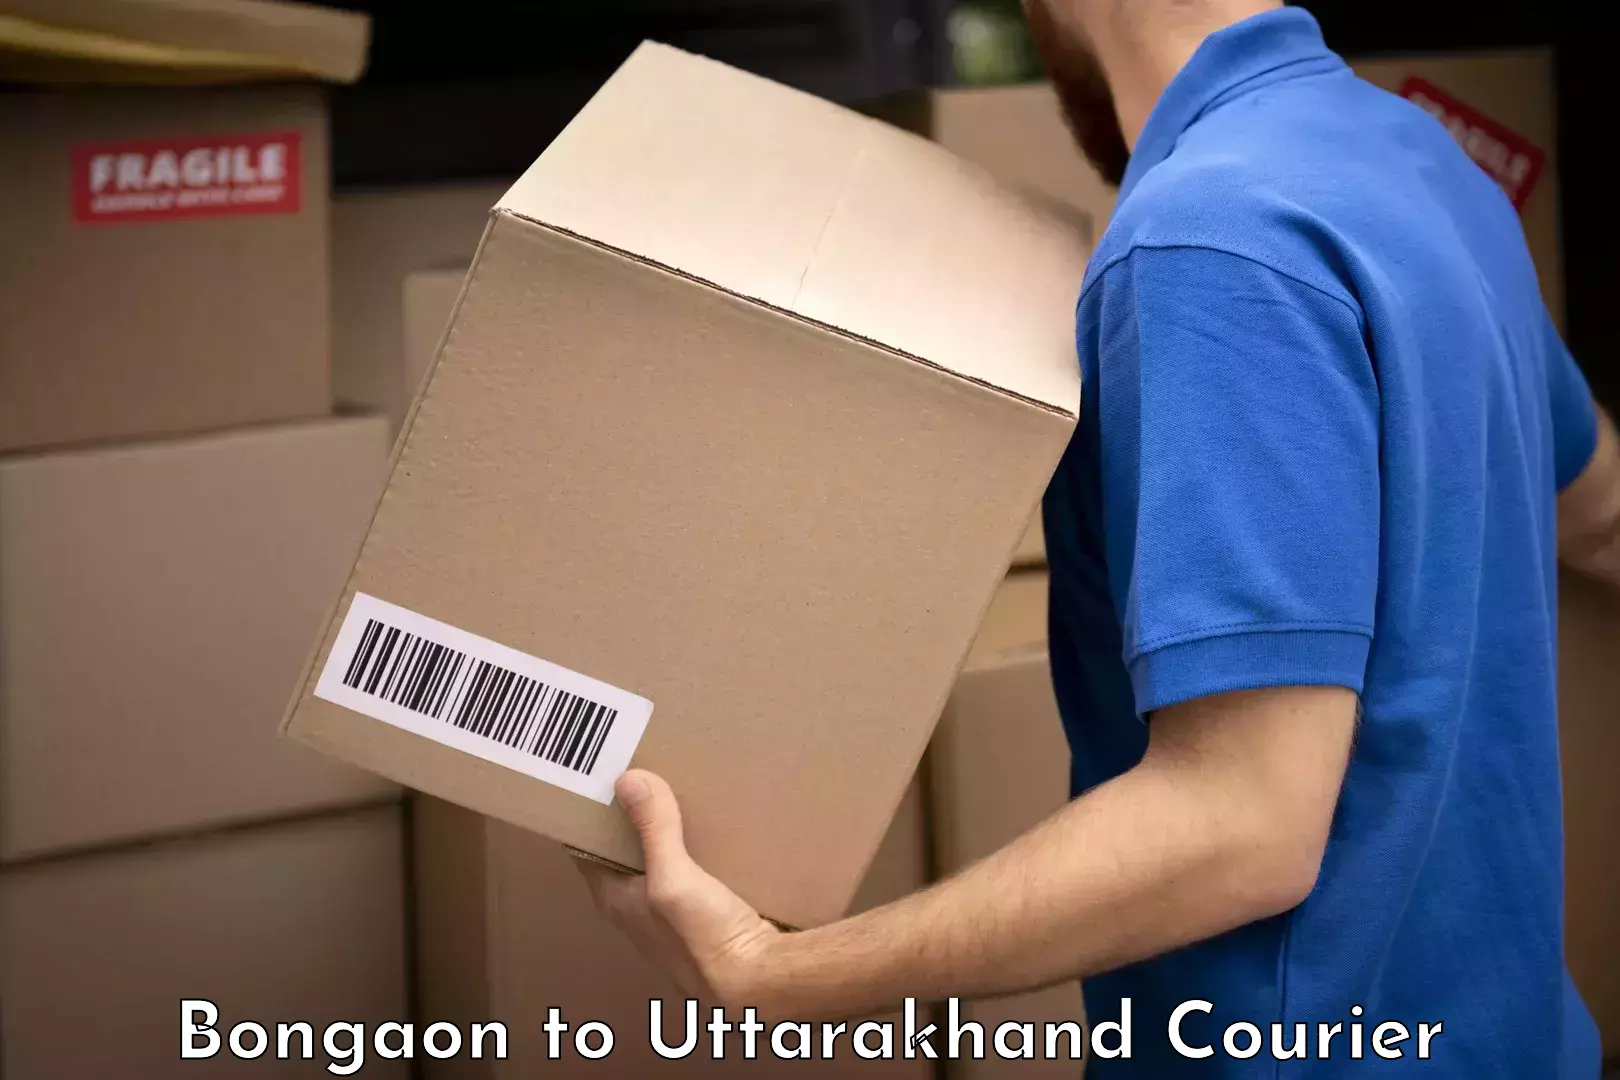 Luggage transport company Bongaon to Uttarakhand